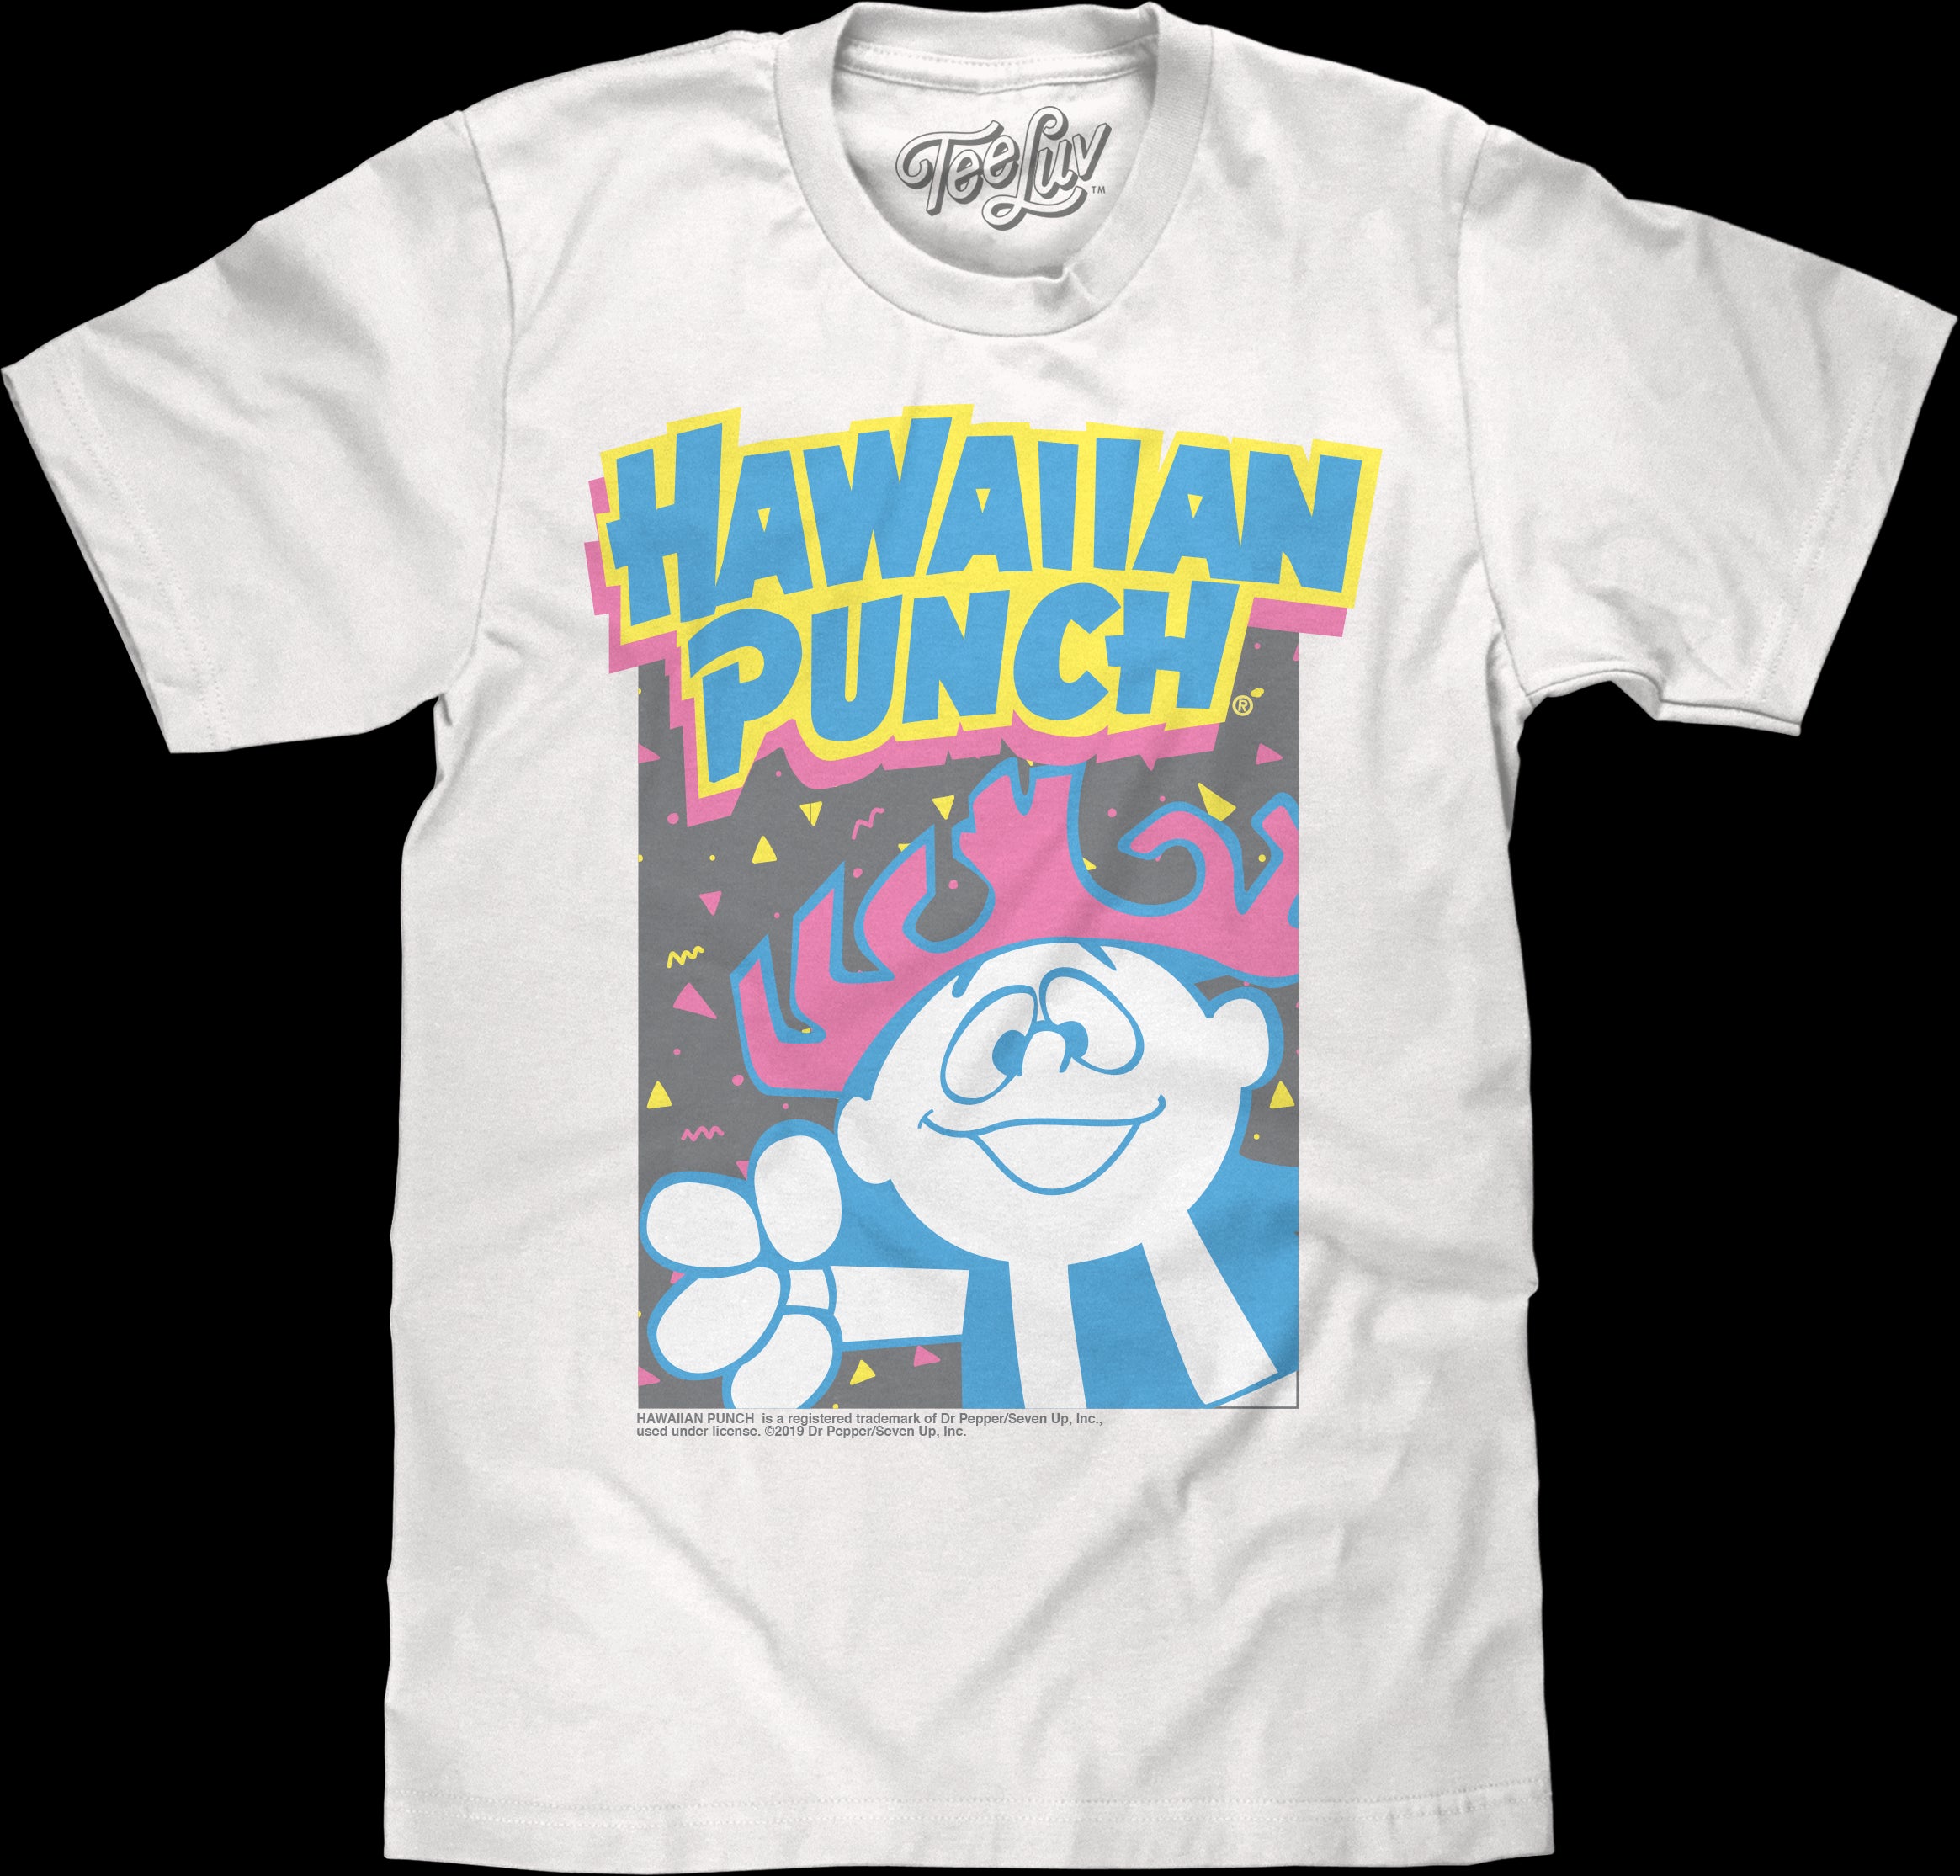 Throwback: Hawaiian Punch's Punchy